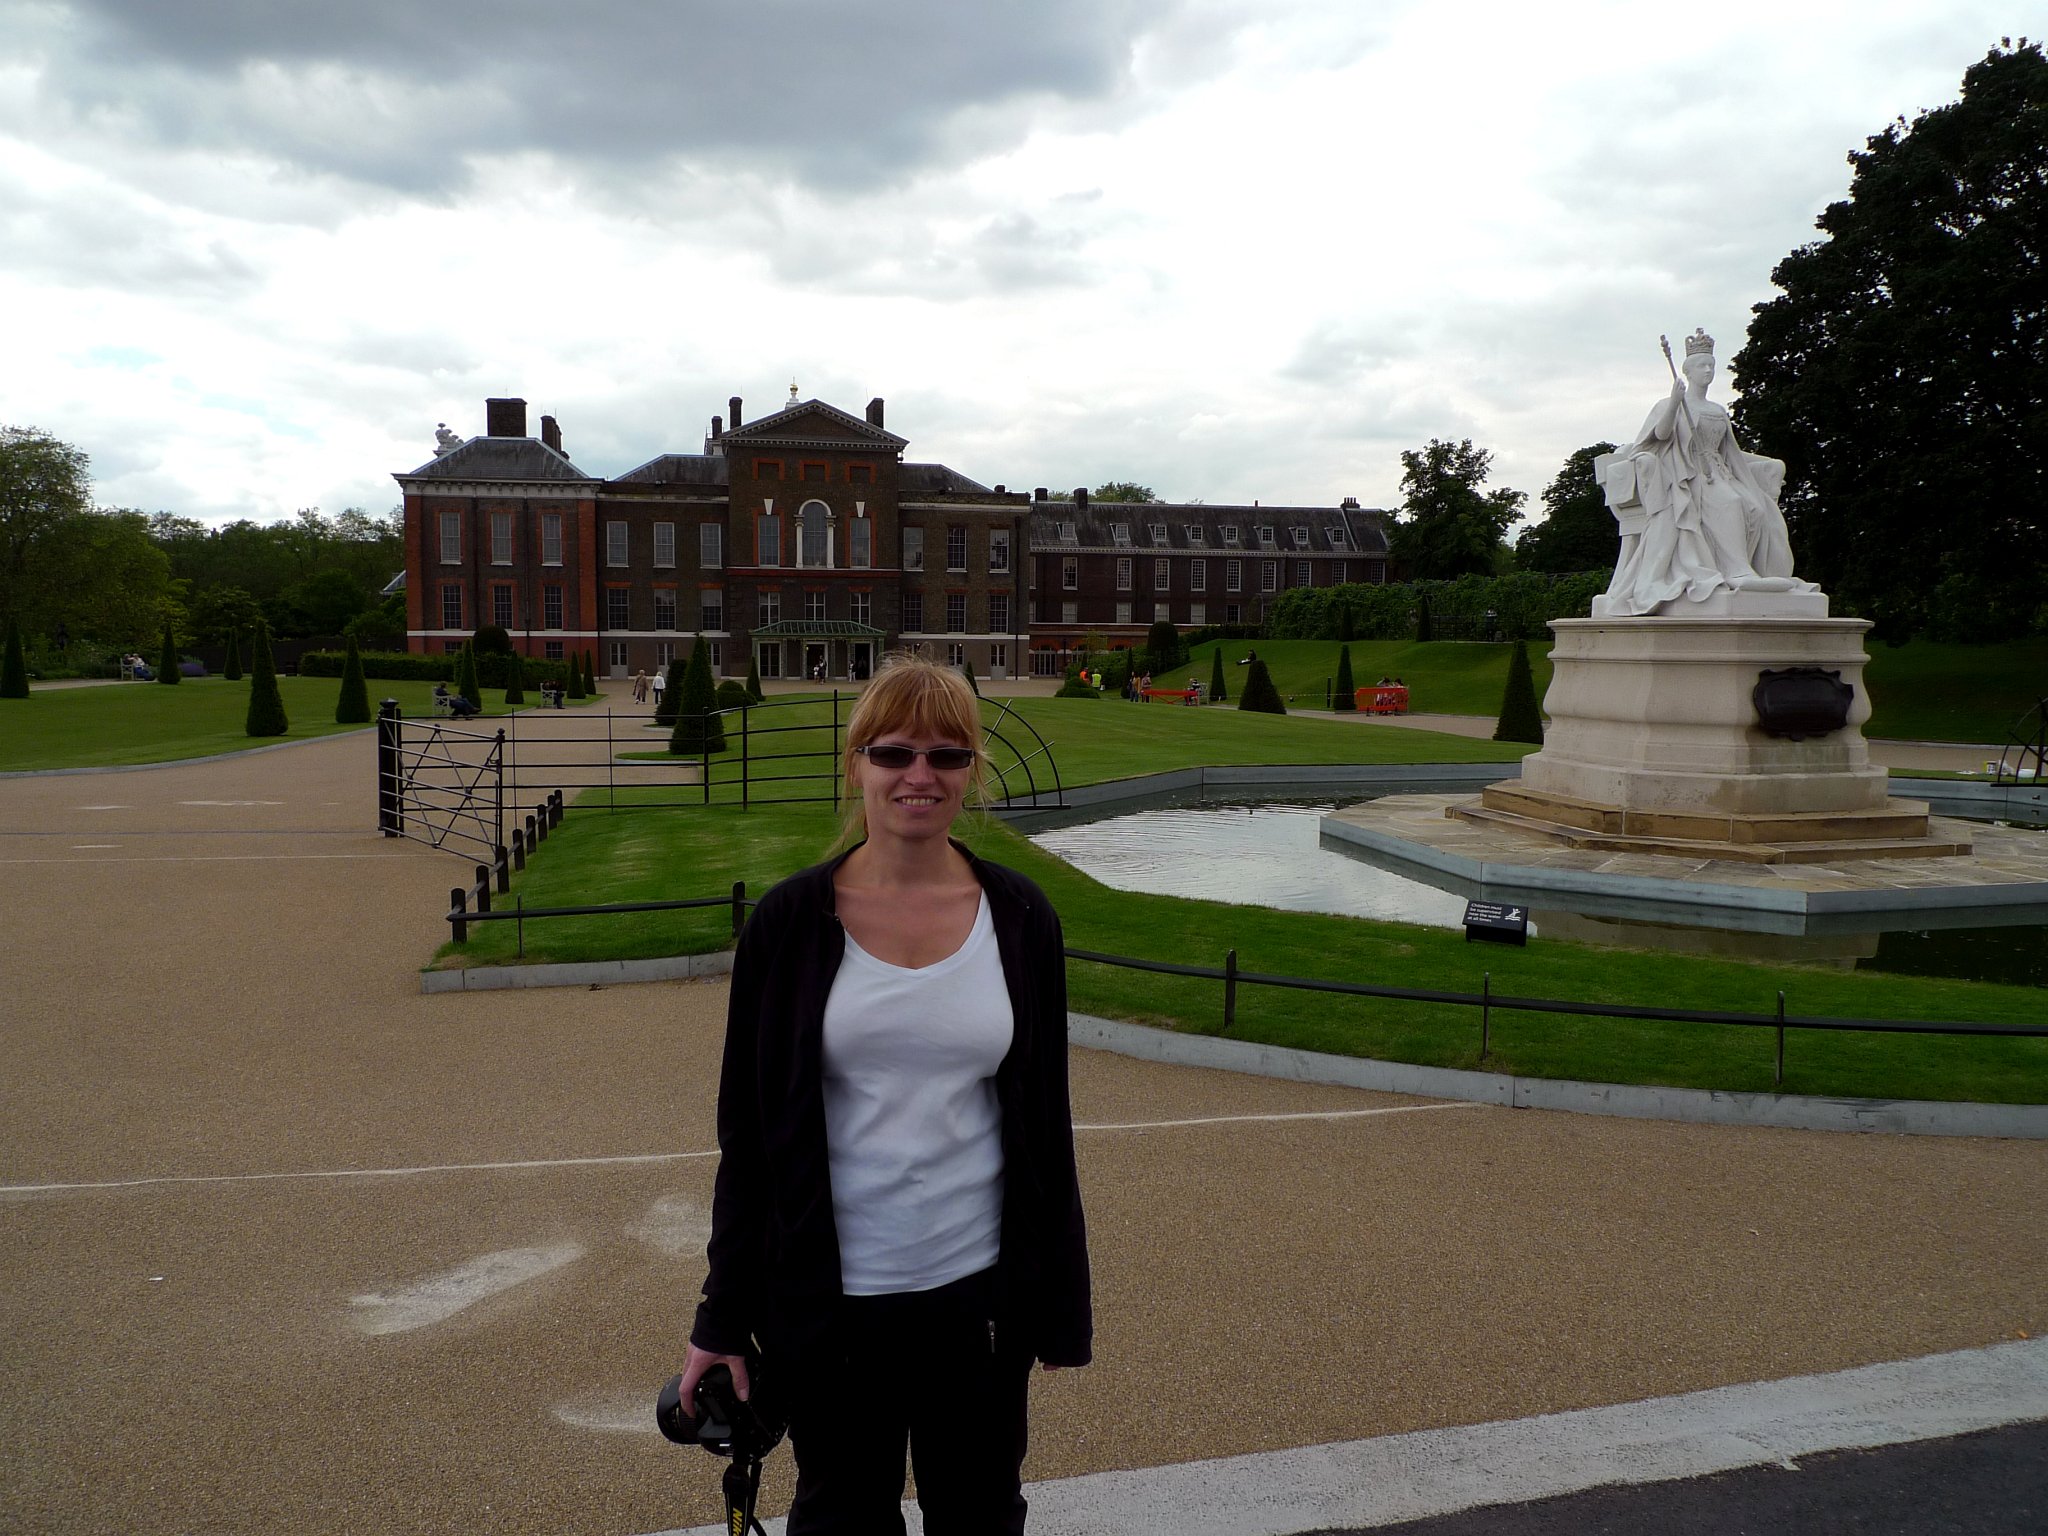 P1070463_1.jpg - Janina před Kensingtonským palácem. Palác je královská rezidence v Kensingtonských zahradách v Londýnském obvodu Kensington a Chelsea.